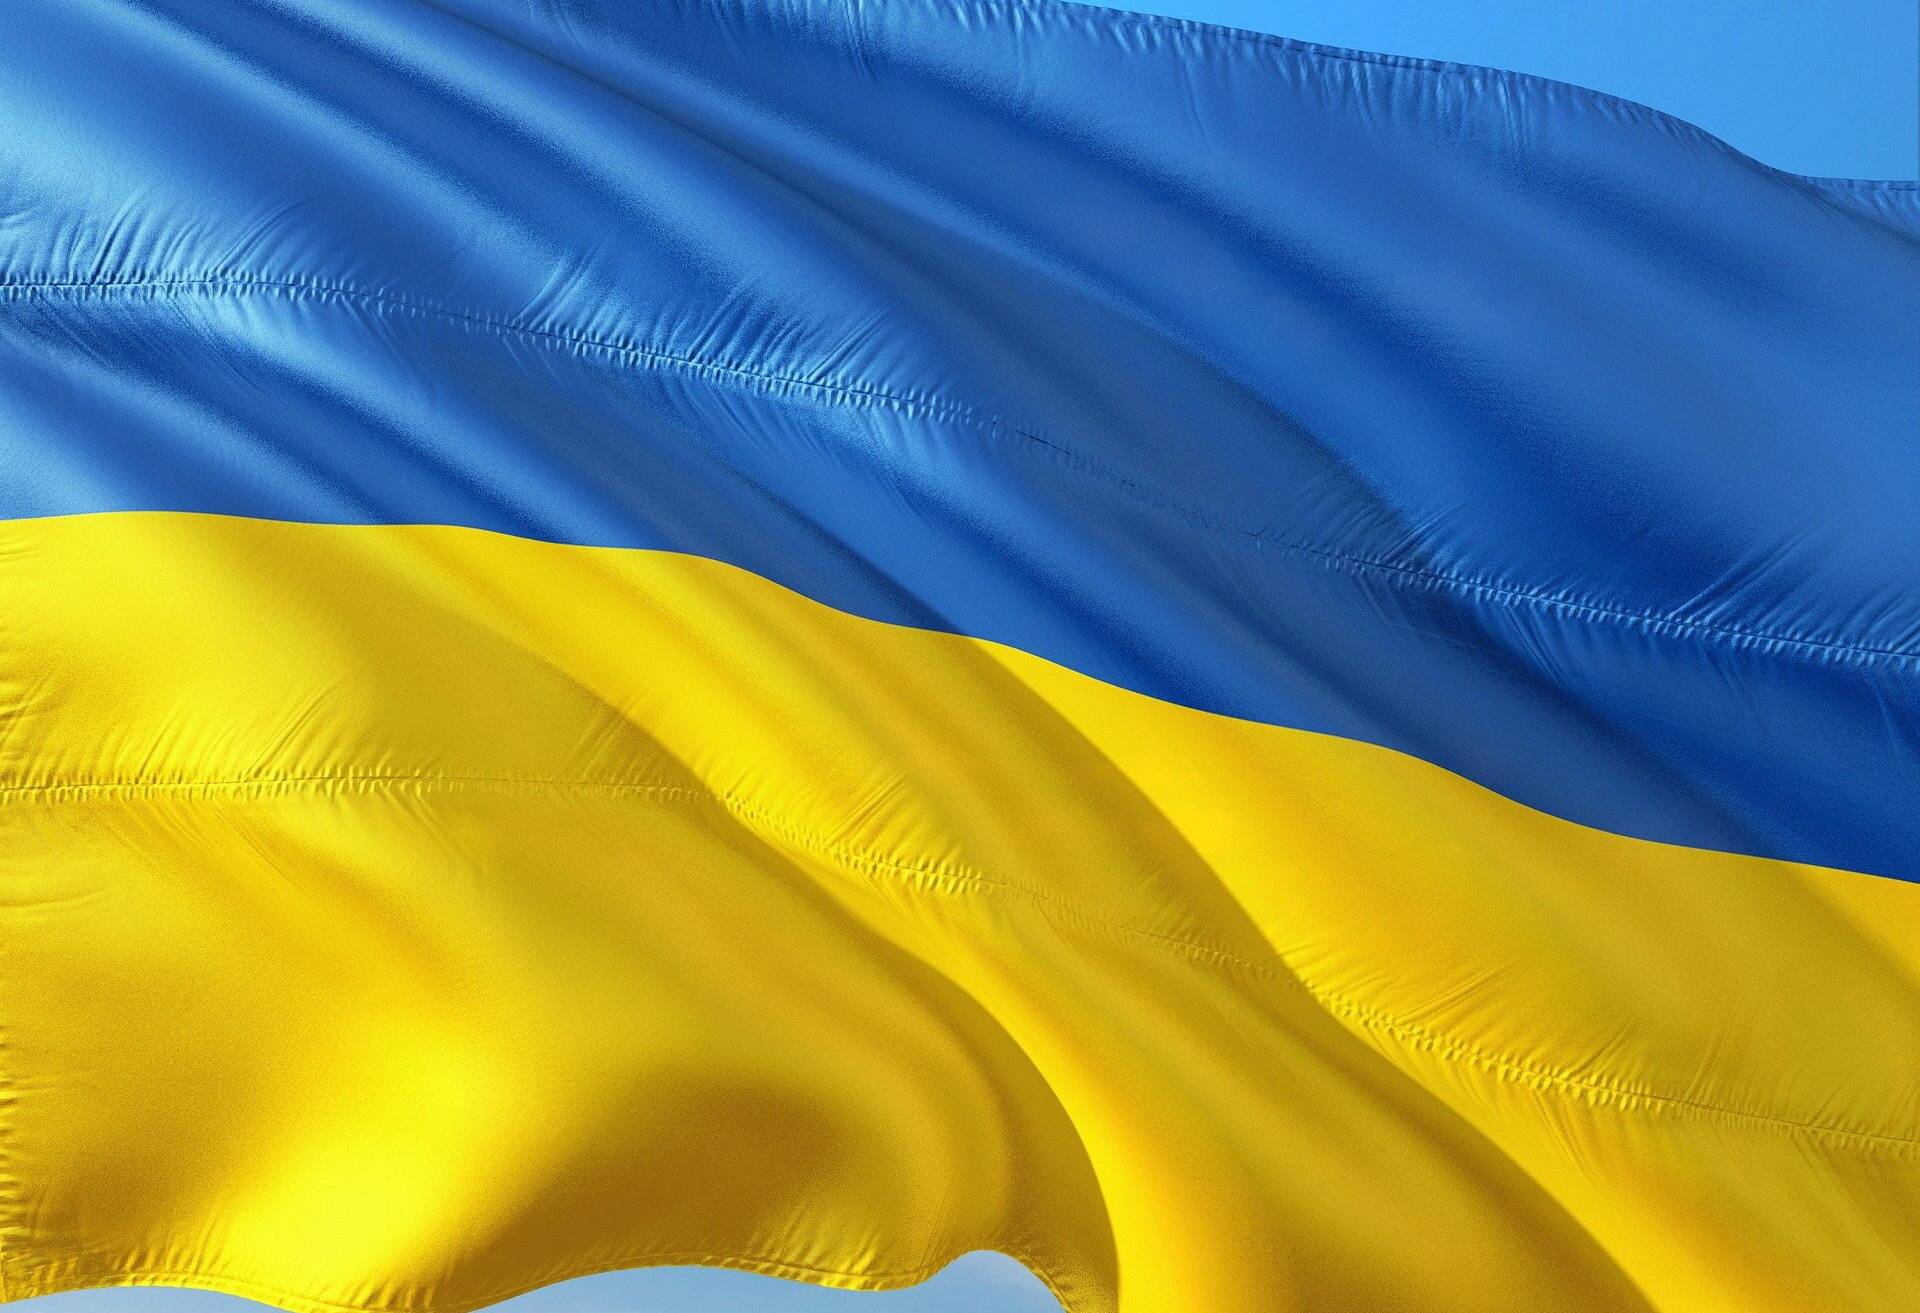 Samstag: Hilfspakete für die Ukraine